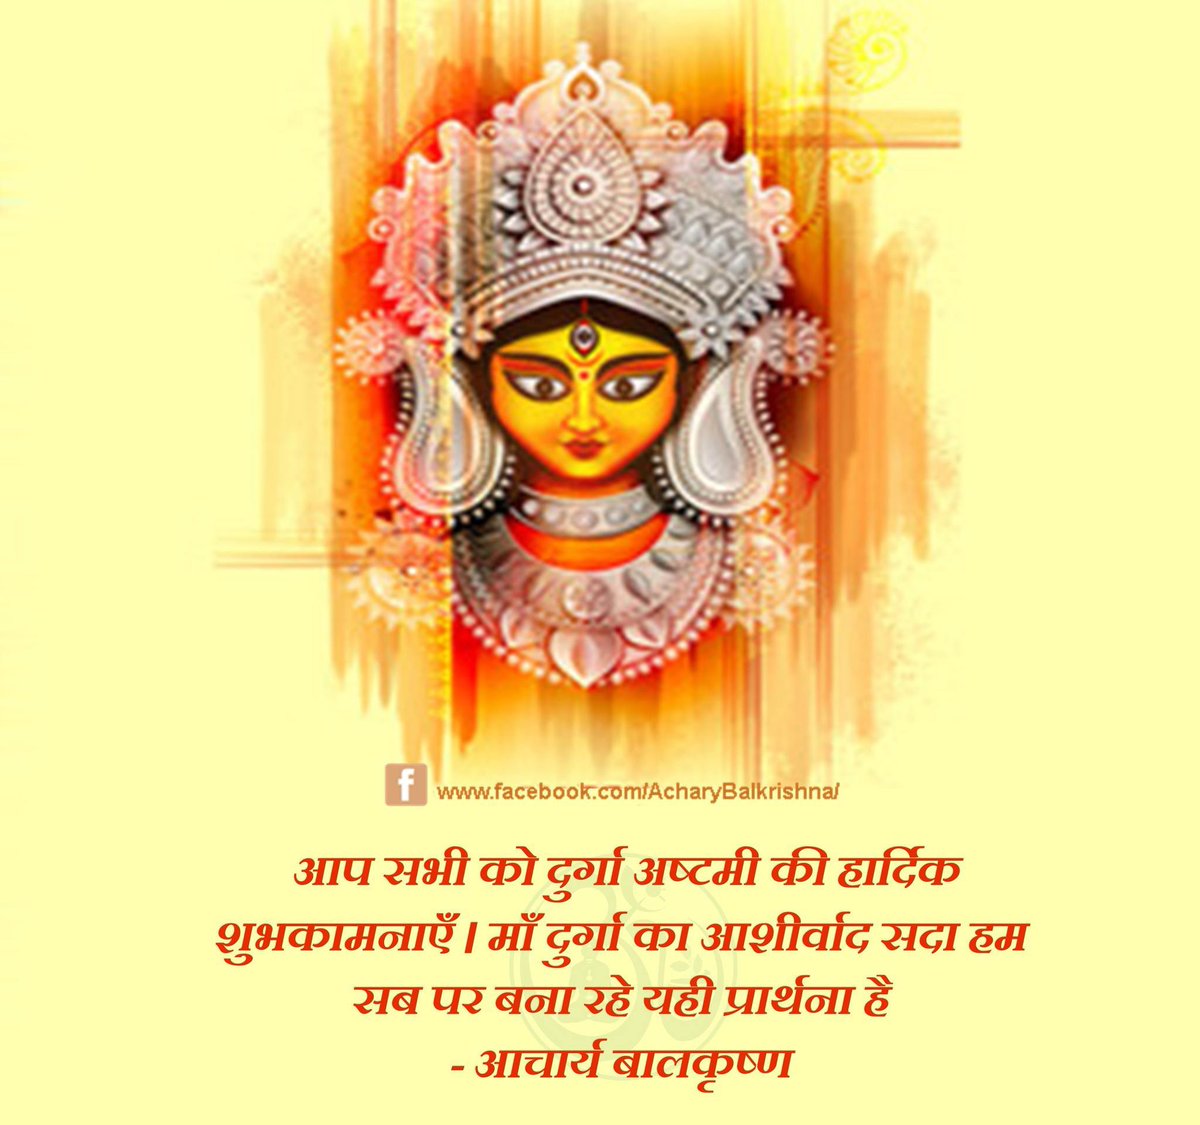 आप सभी को #दुर्गा_अष्टमी की हार्दिक शुभकामनाएँ । माँ दुर्गा का आशीर्वाद सदा हम सब पर बना रहे यही प्रार्थना है #आचार्यबालकृष्ण #DargaAshtmi